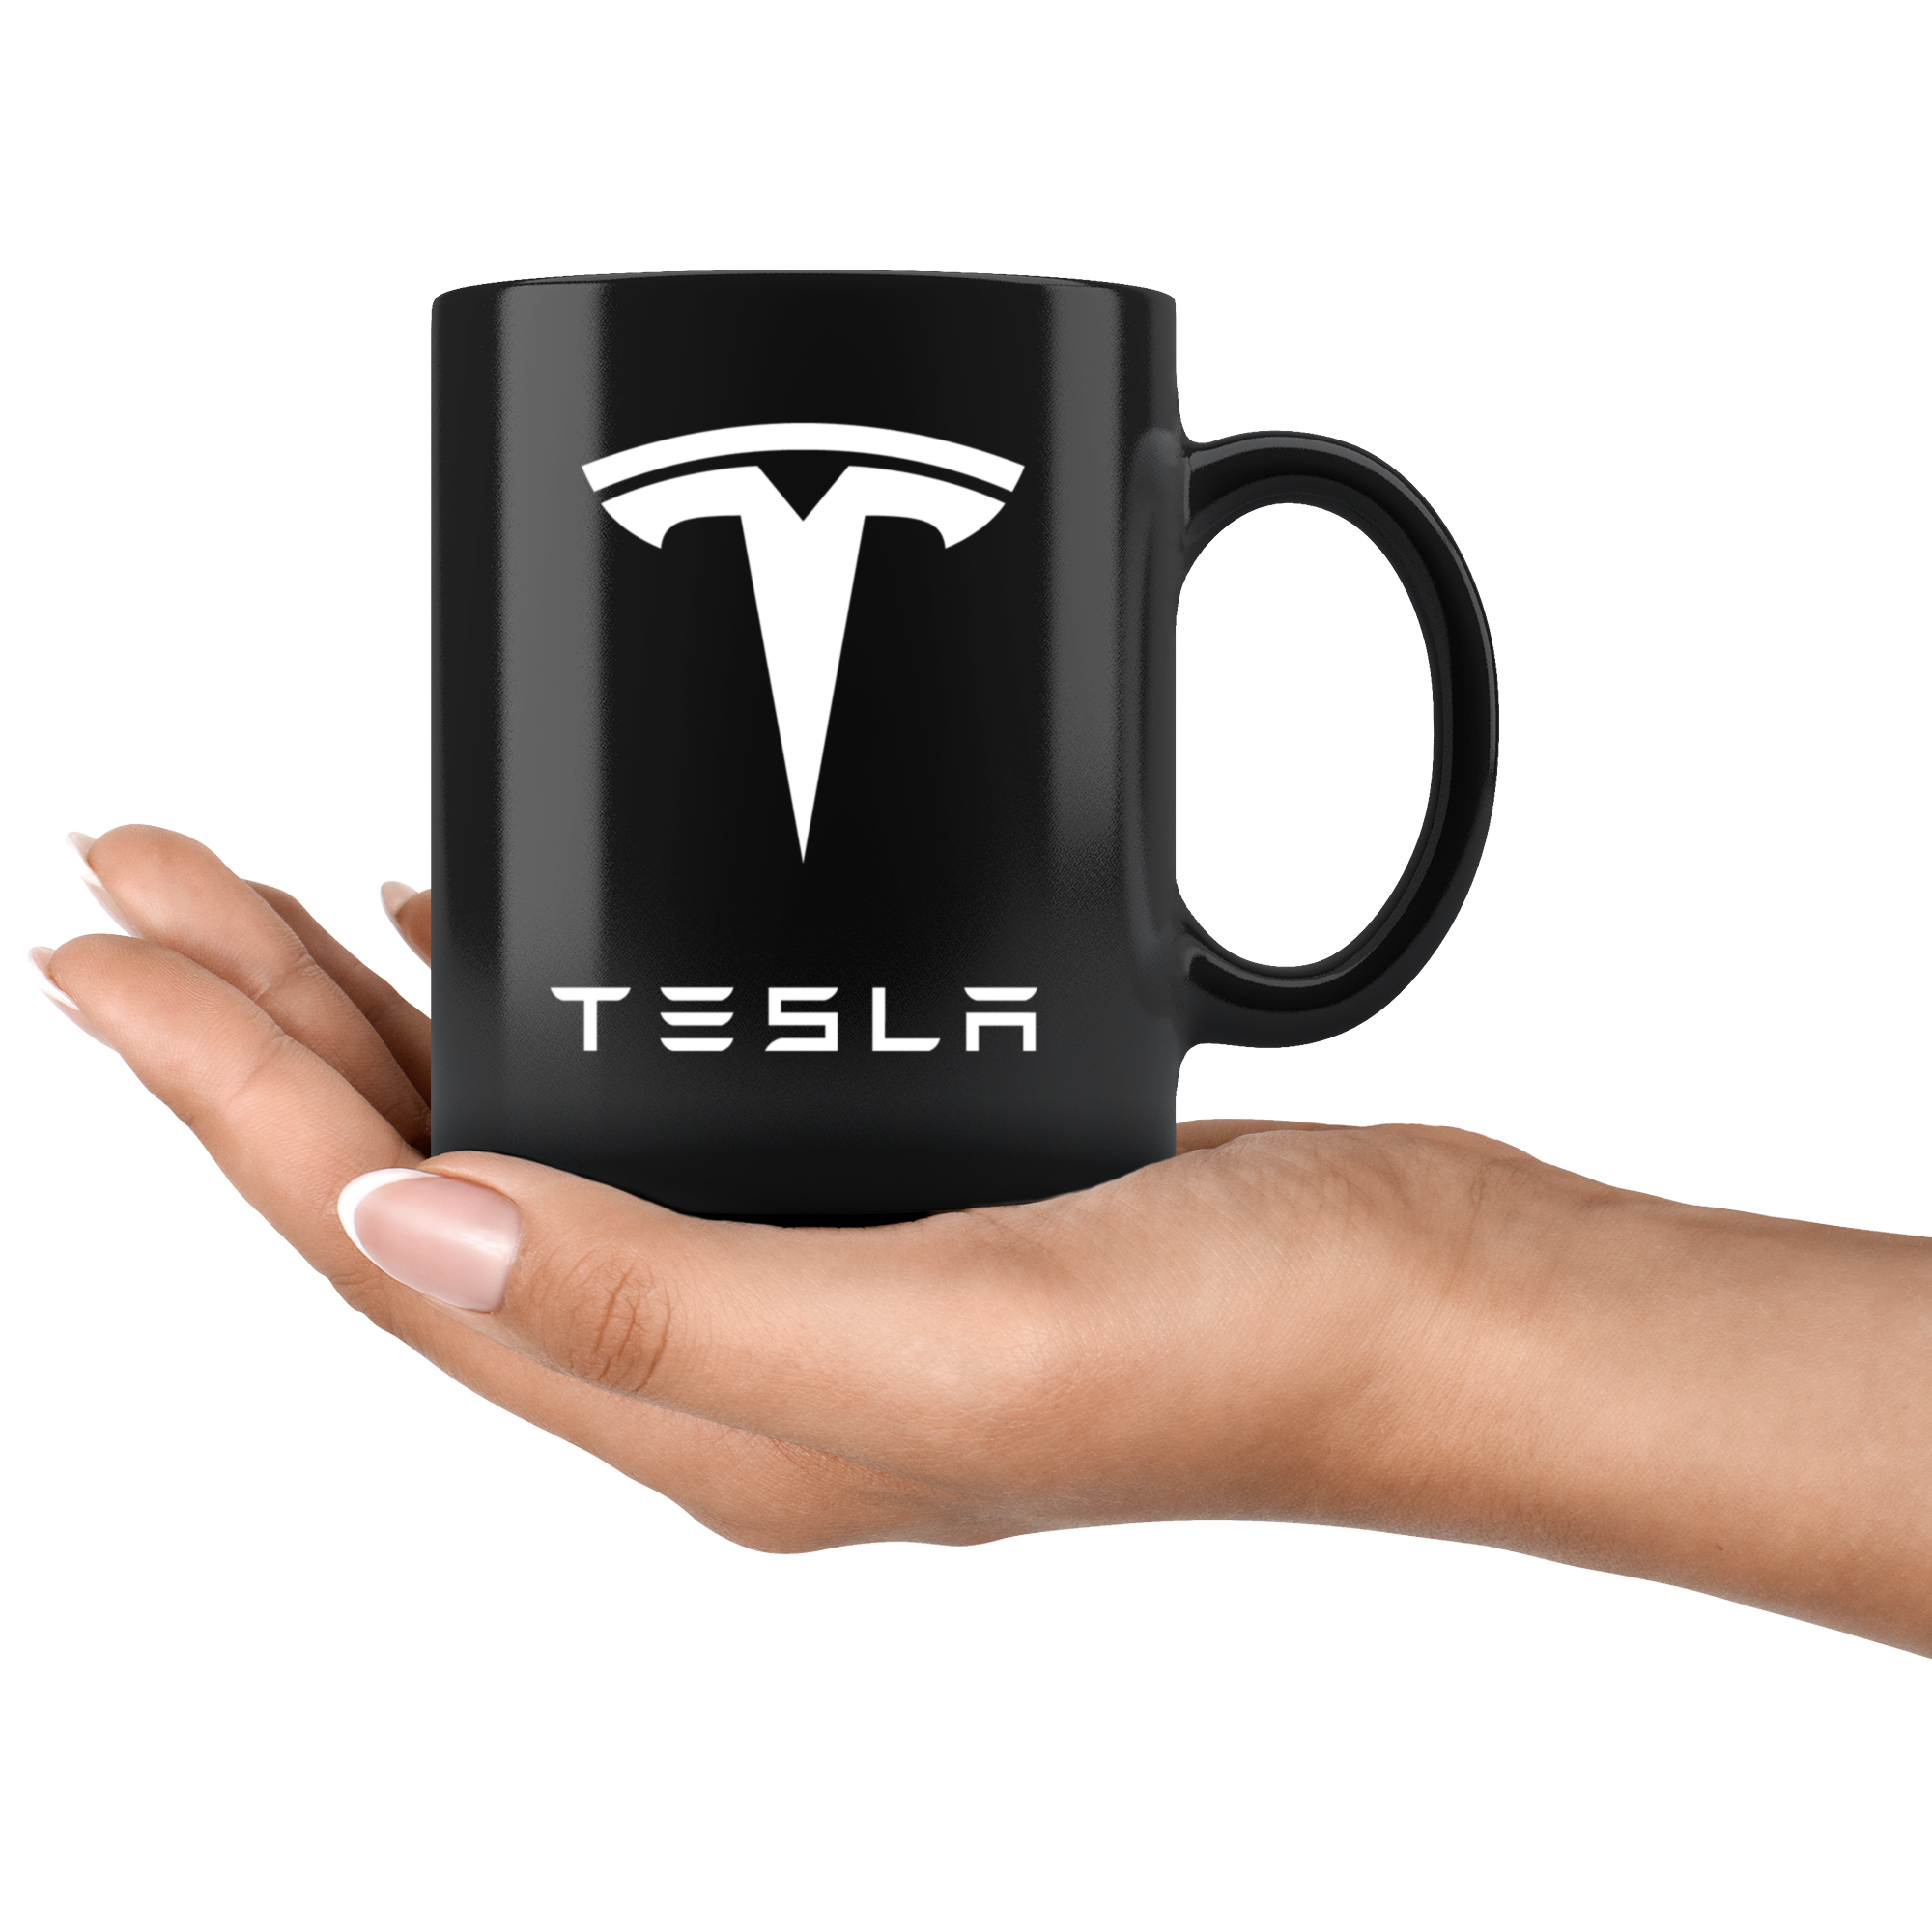 Tesla S3XY Mug - US